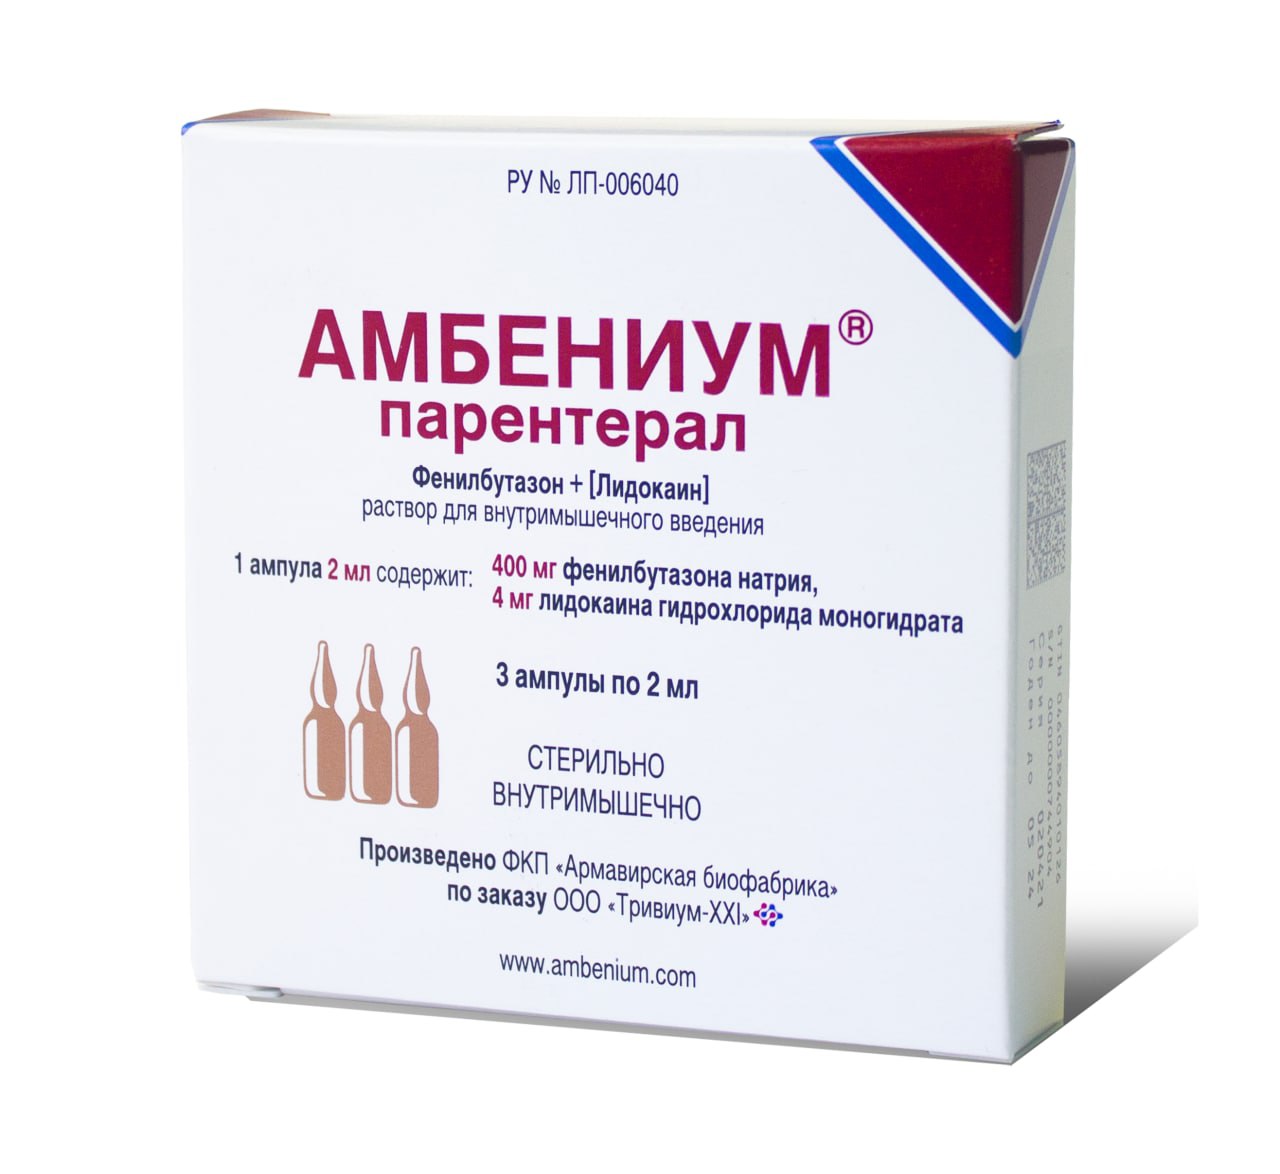 Нестероидное противовоспалительное средство Амбениум парентерал раствор .